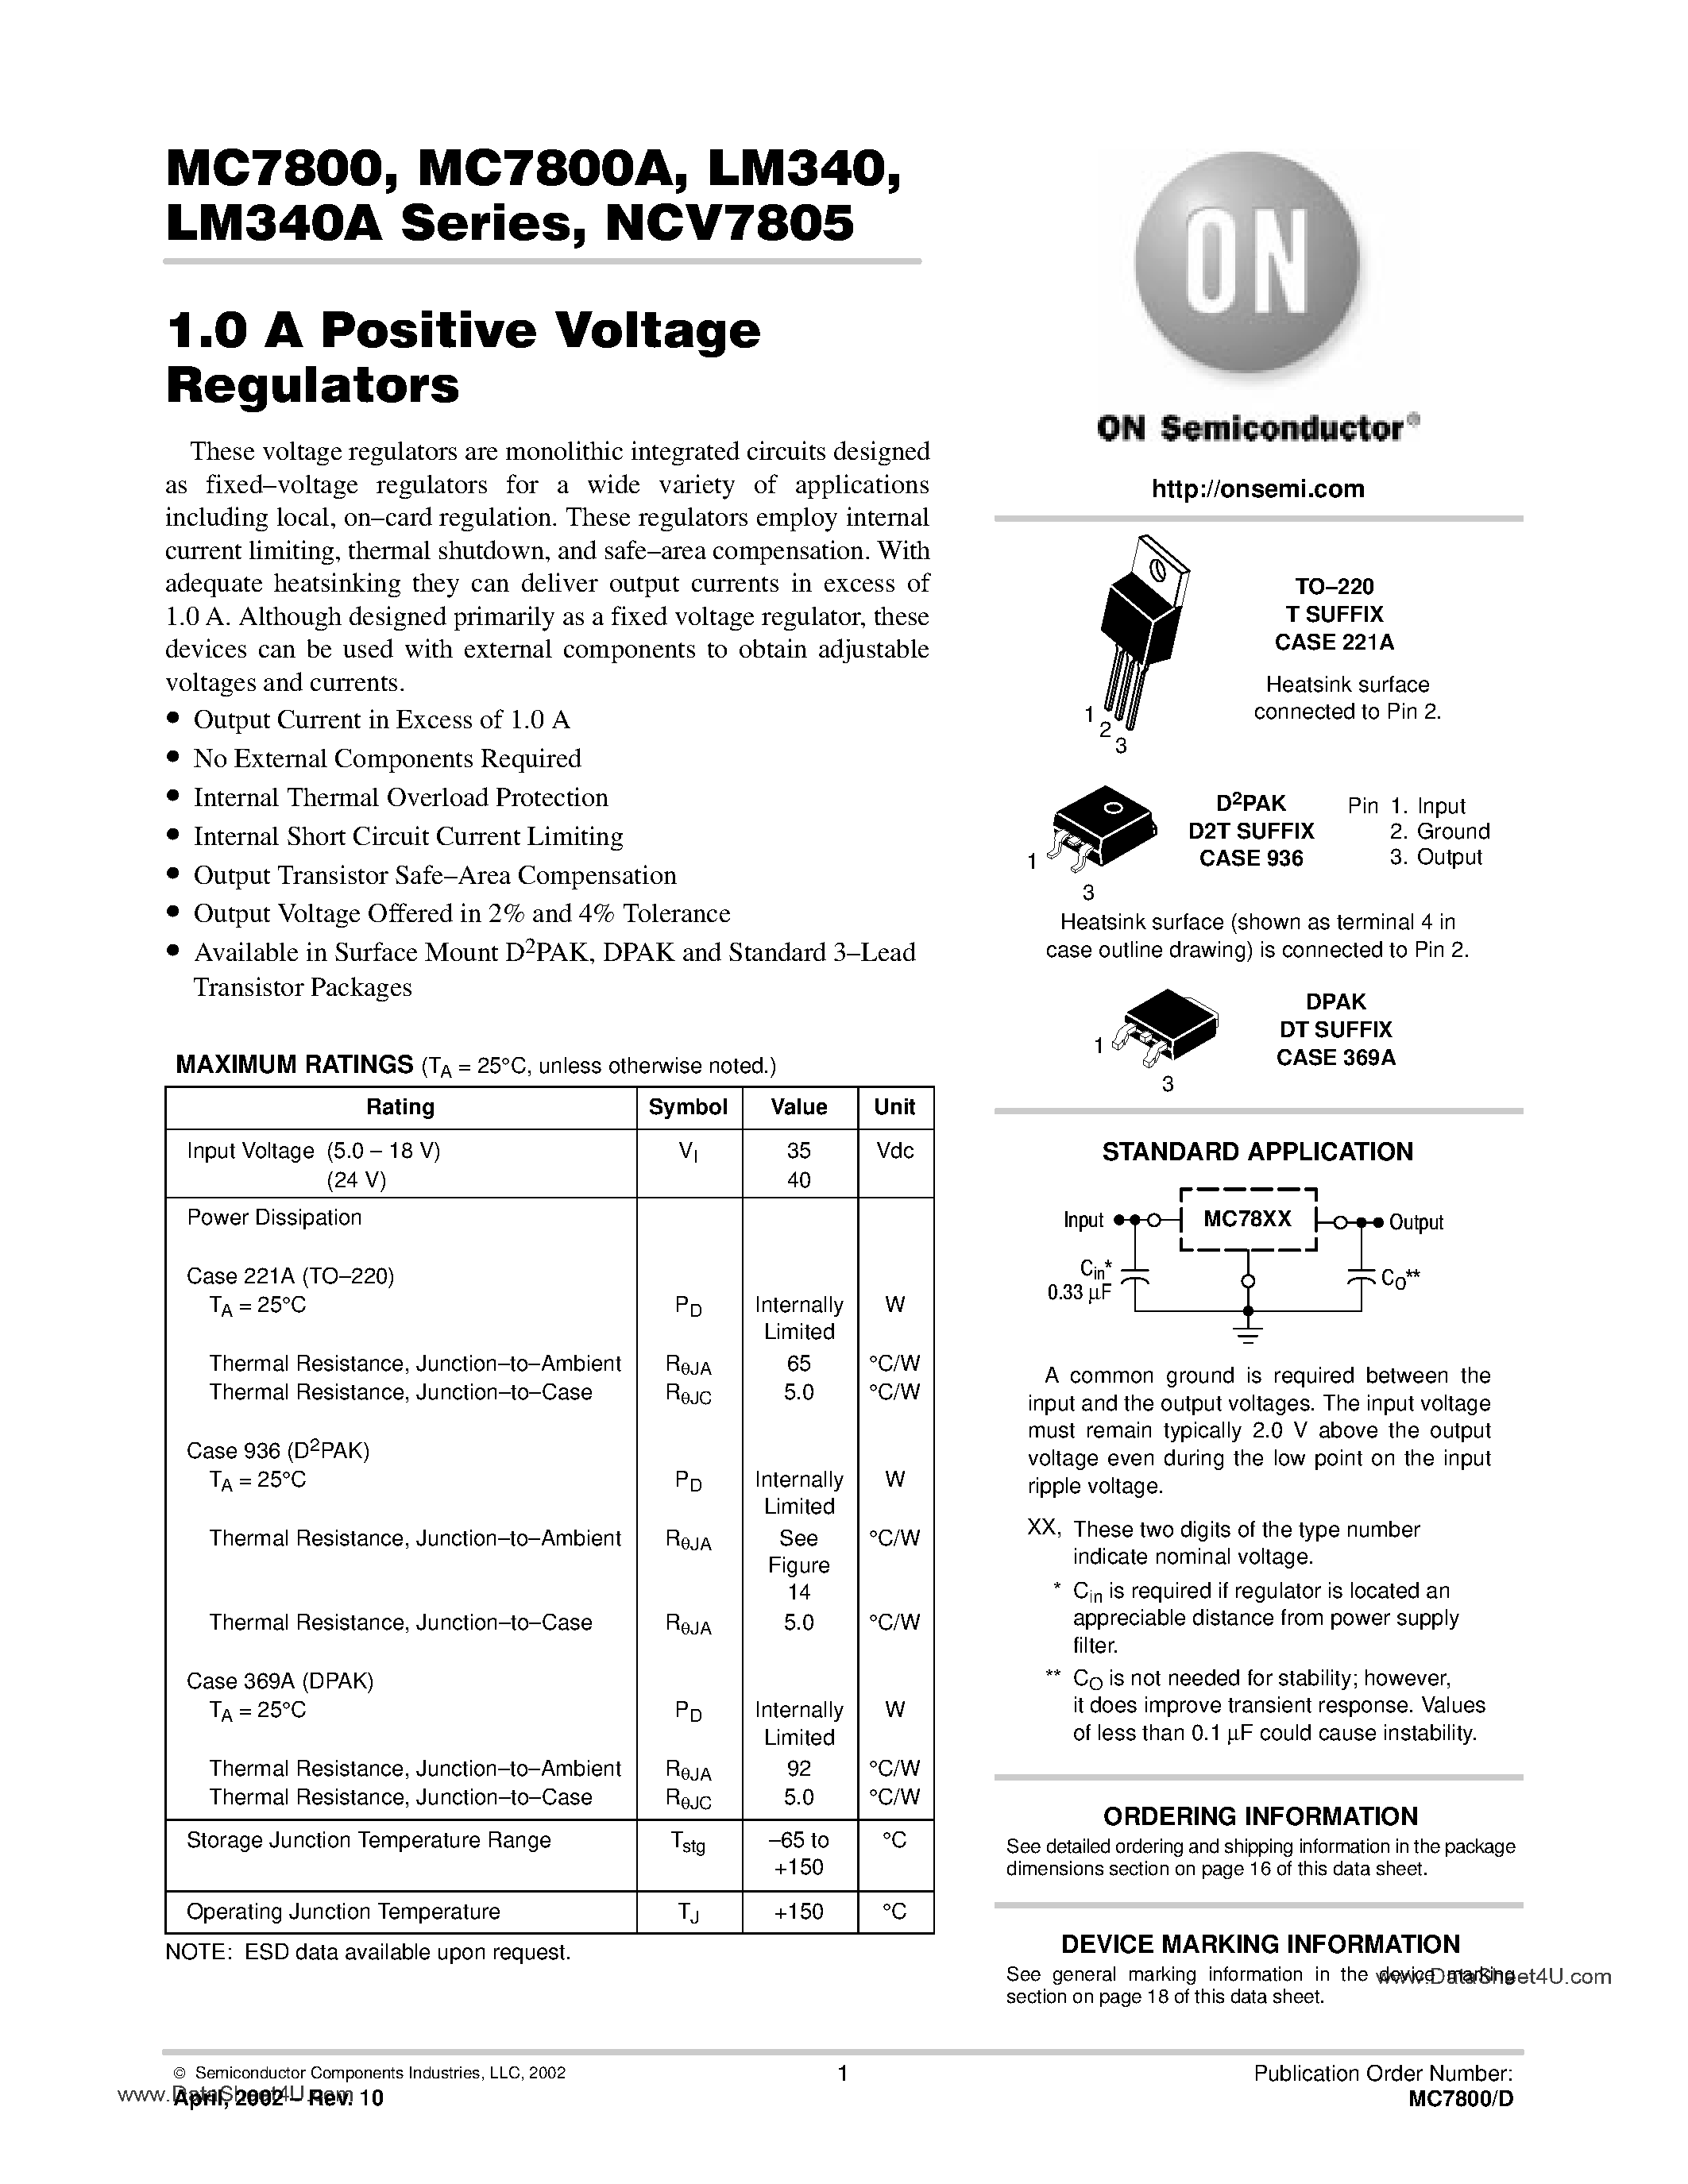 Даташит MC7808CT-(MC7800x Series) 1A Positive Voltage Regulator страница 1